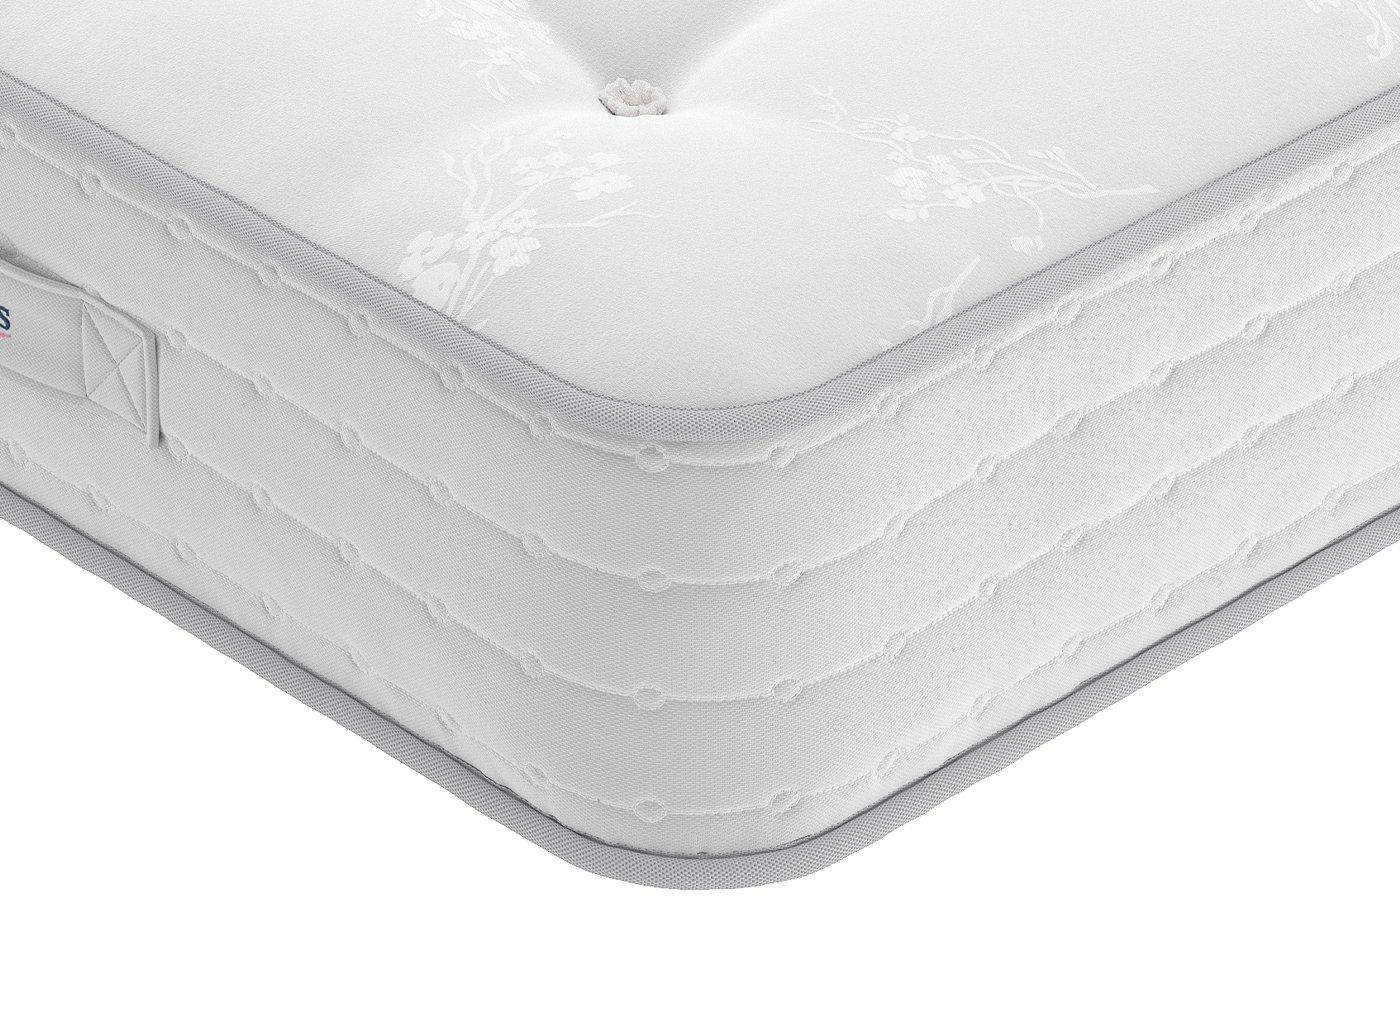 maitland pocket sprung mattress review